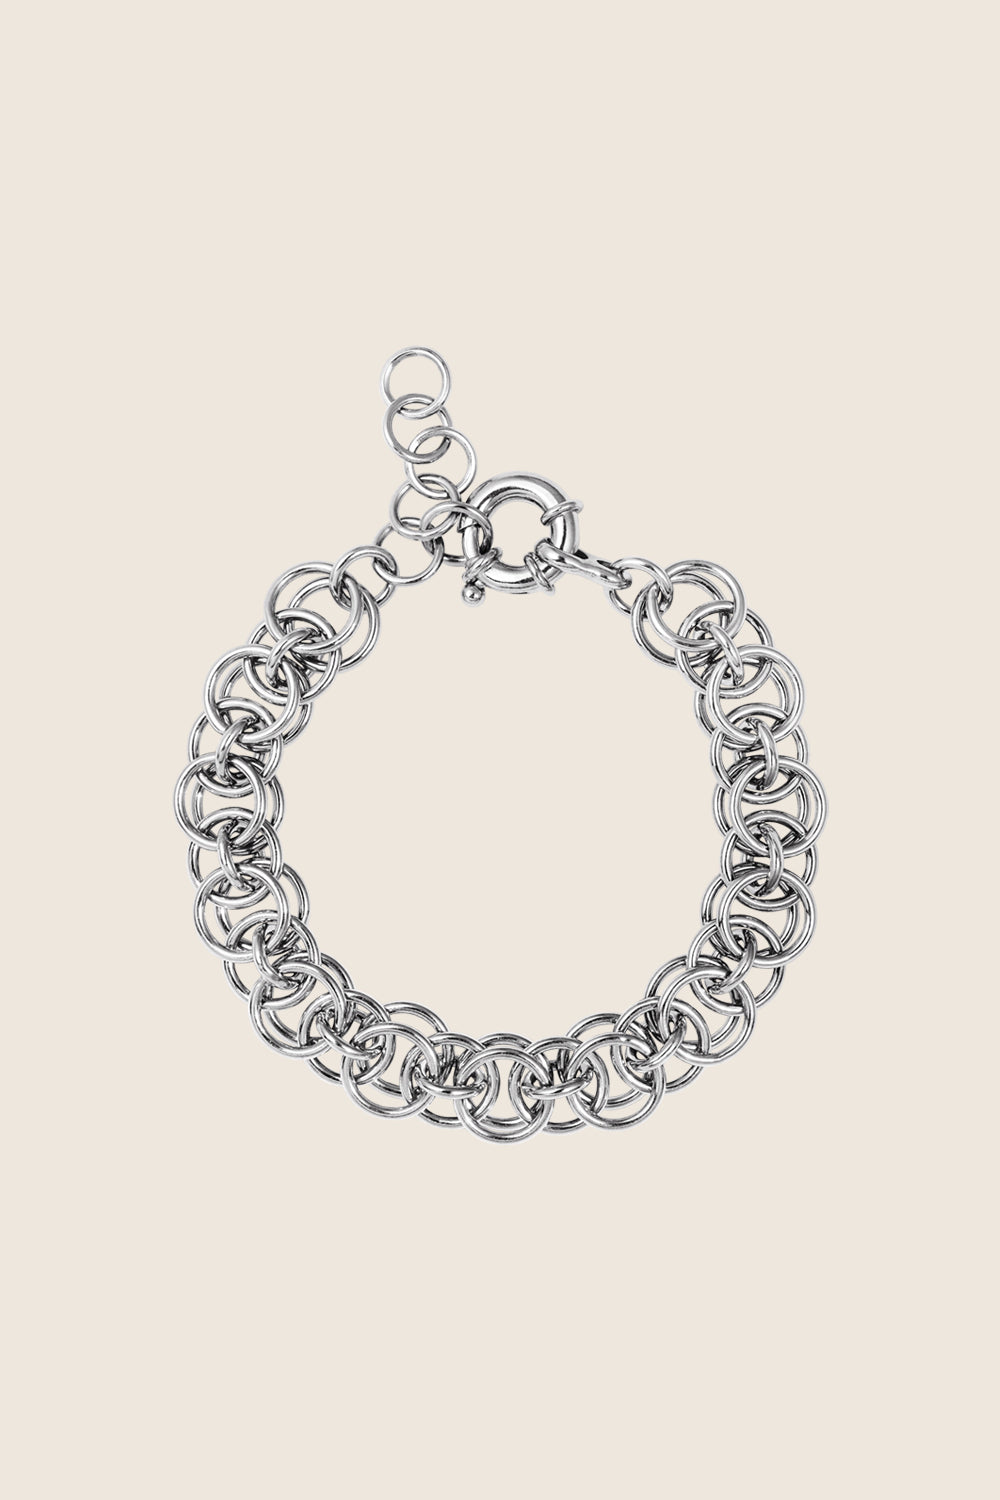 bransoletka łańcuch RICA srebro 925 polska biżuteria UMIAR ręcznie robiona